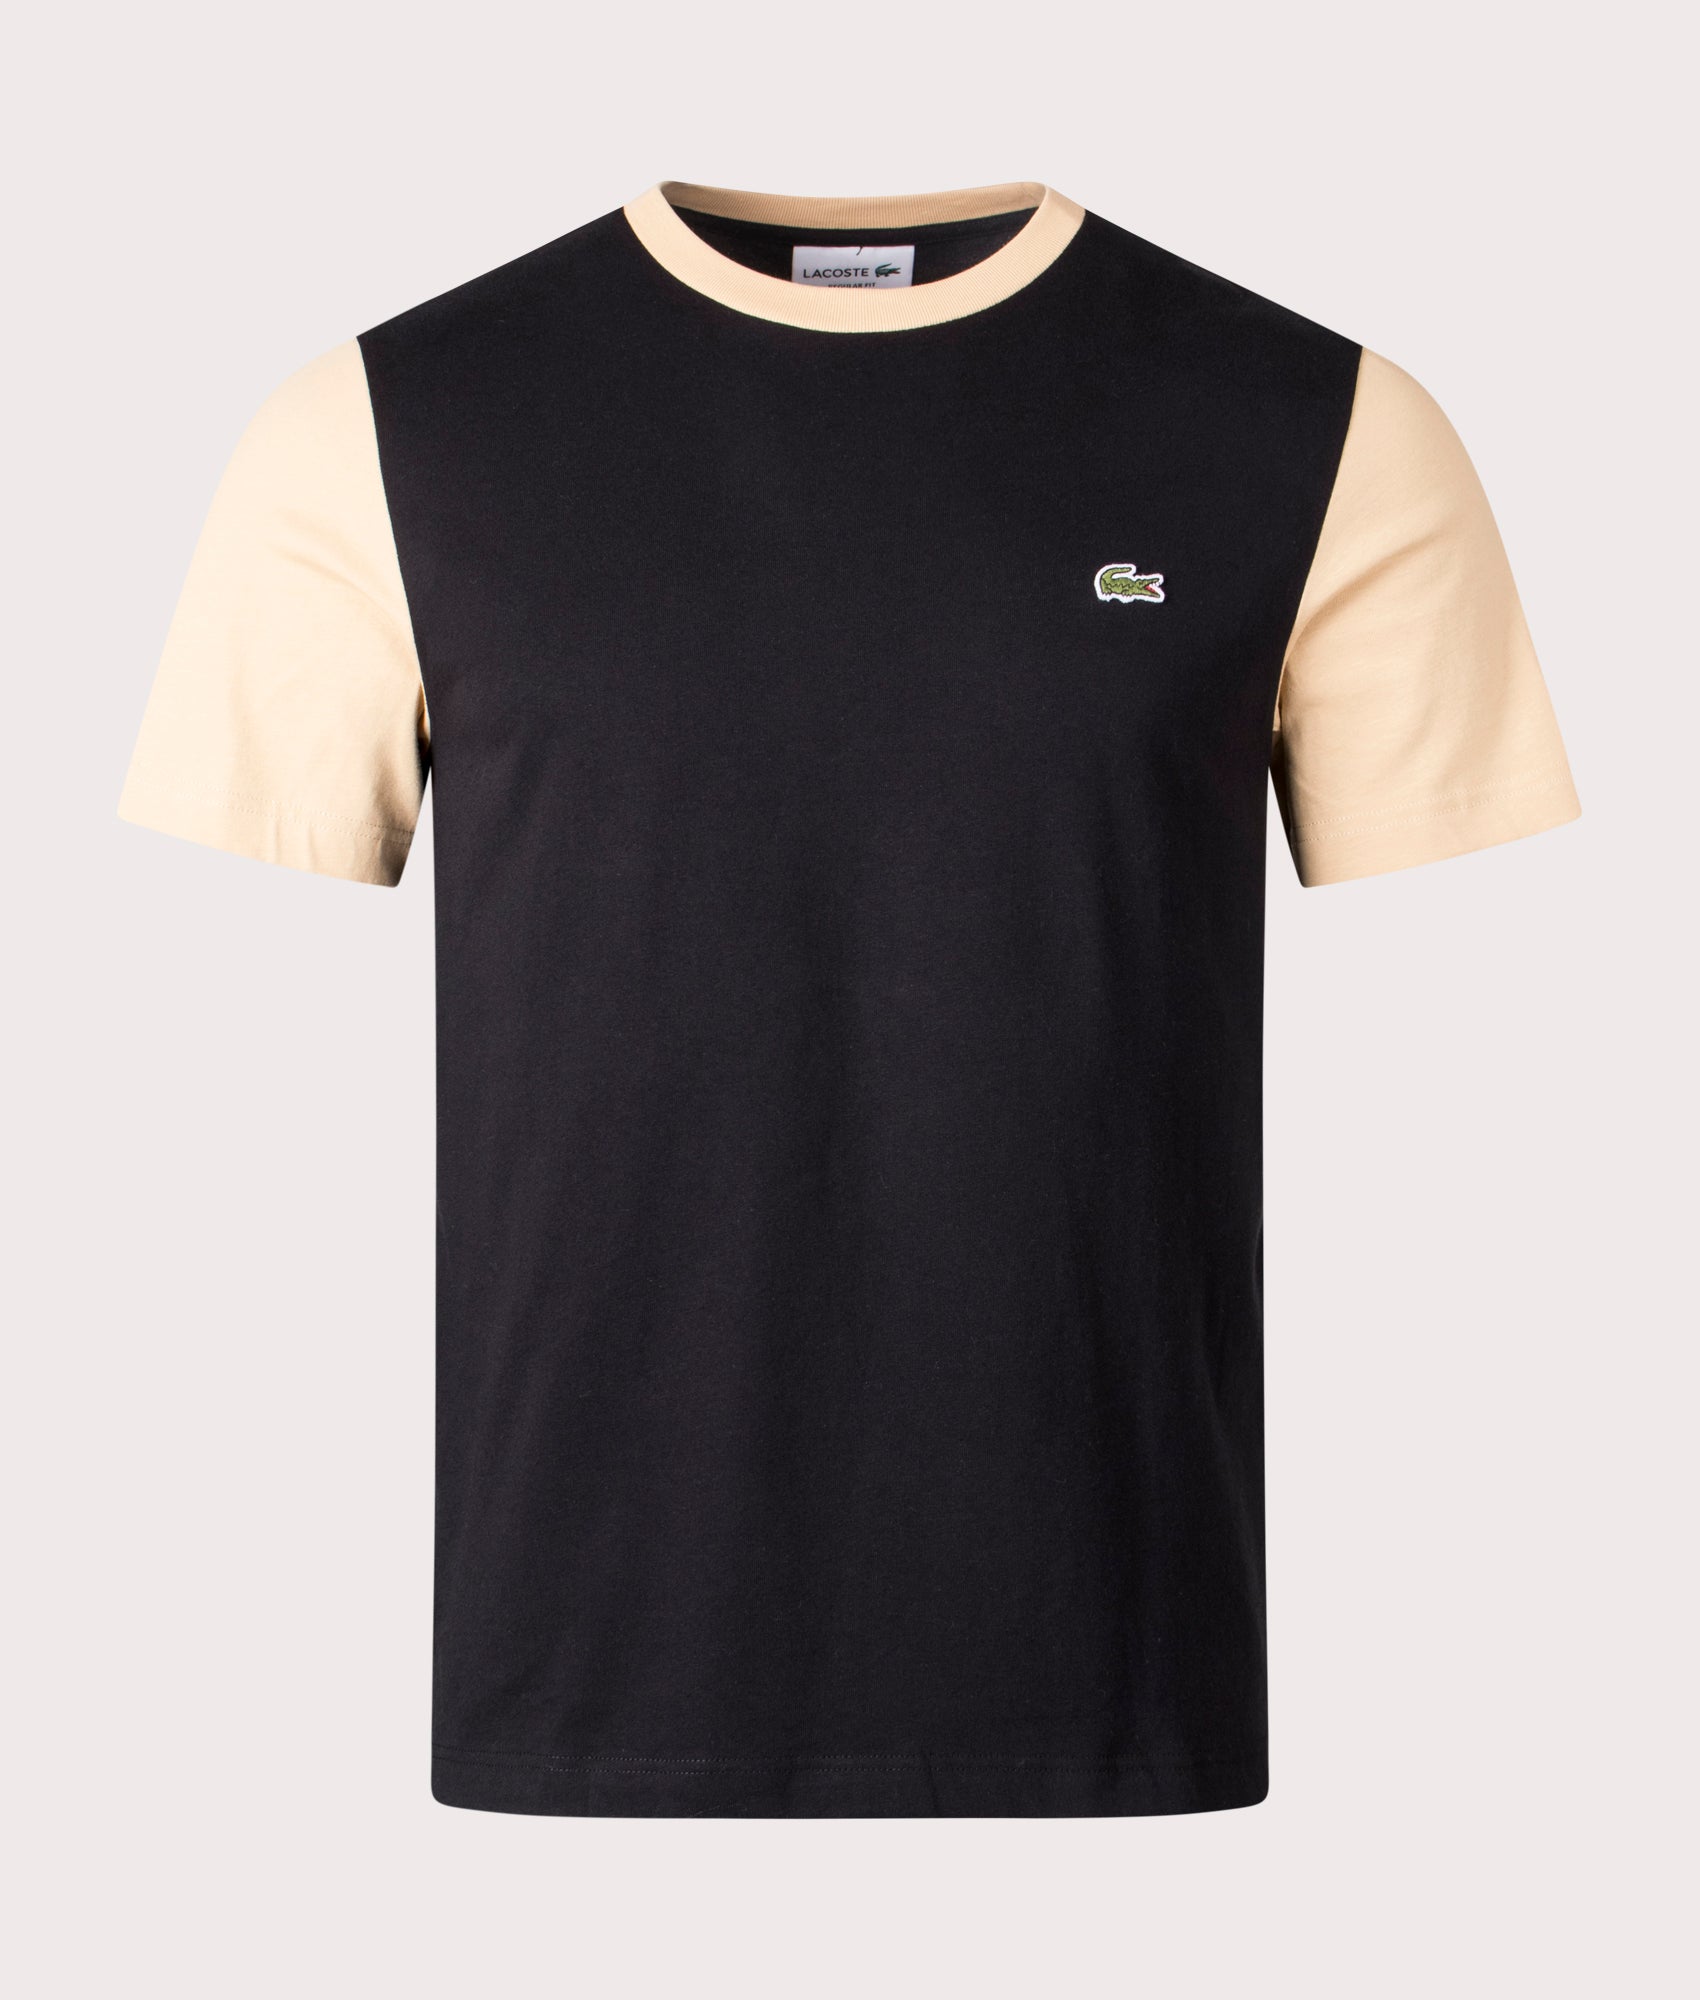 Lacoste Mens Colour Block T-Shirt - Colour: IRA Black/Croissant - Size: 5/L